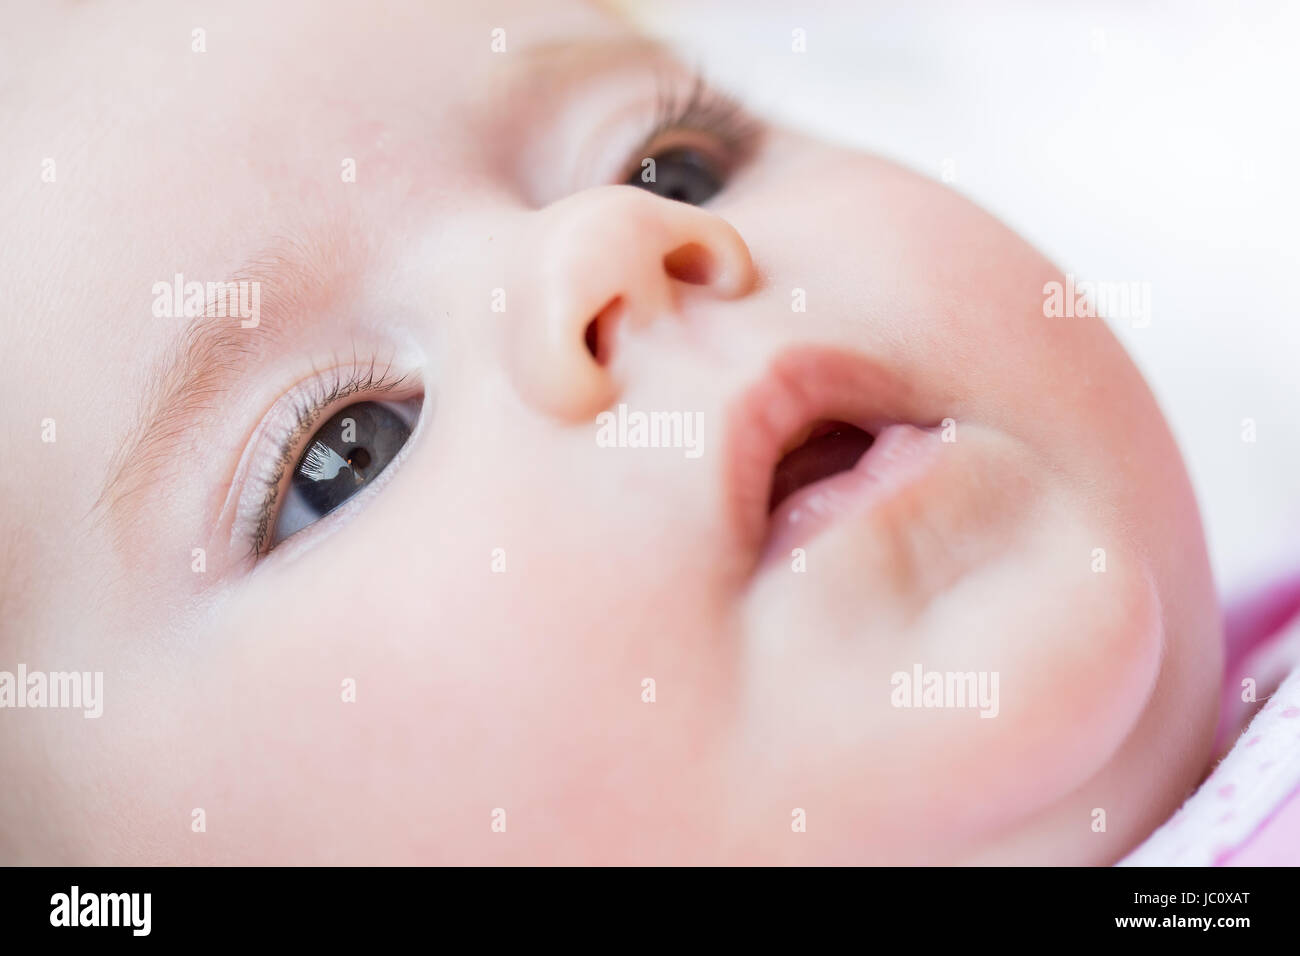 Macro di adorabile bambina occhio con messa a fuoco poco profonda Foto Stock